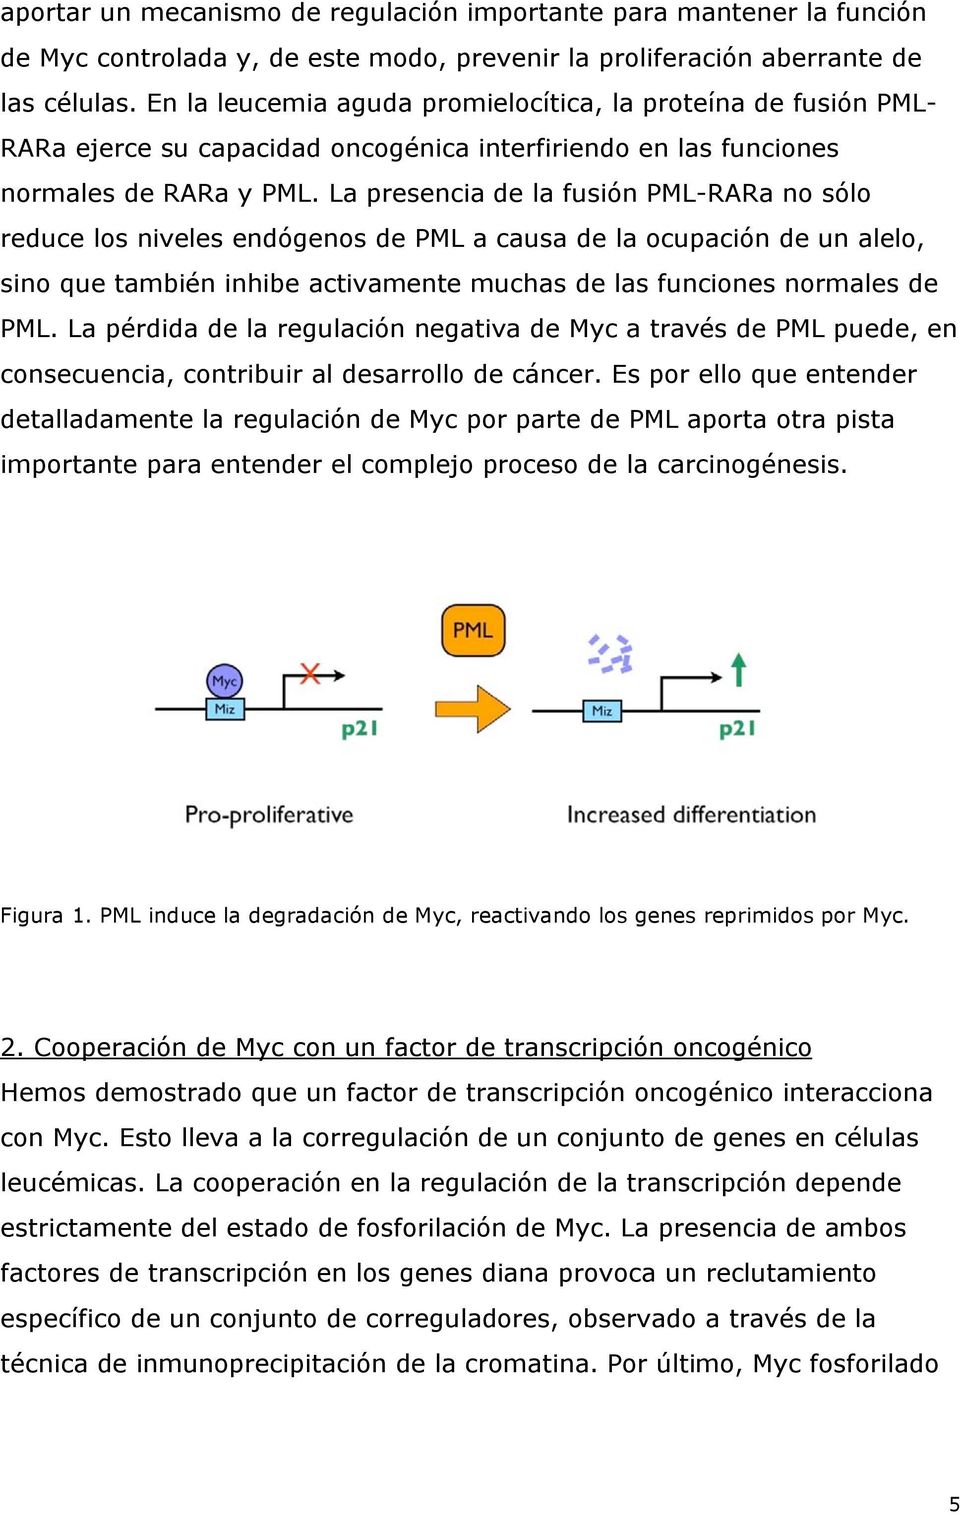 La presencia de la fusión PML-RARa no sólo reduce los niveles endógenos de PML a causa de la ocupación de un alelo, sino que también inhibe activamente muchas de las funciones normales de PML.